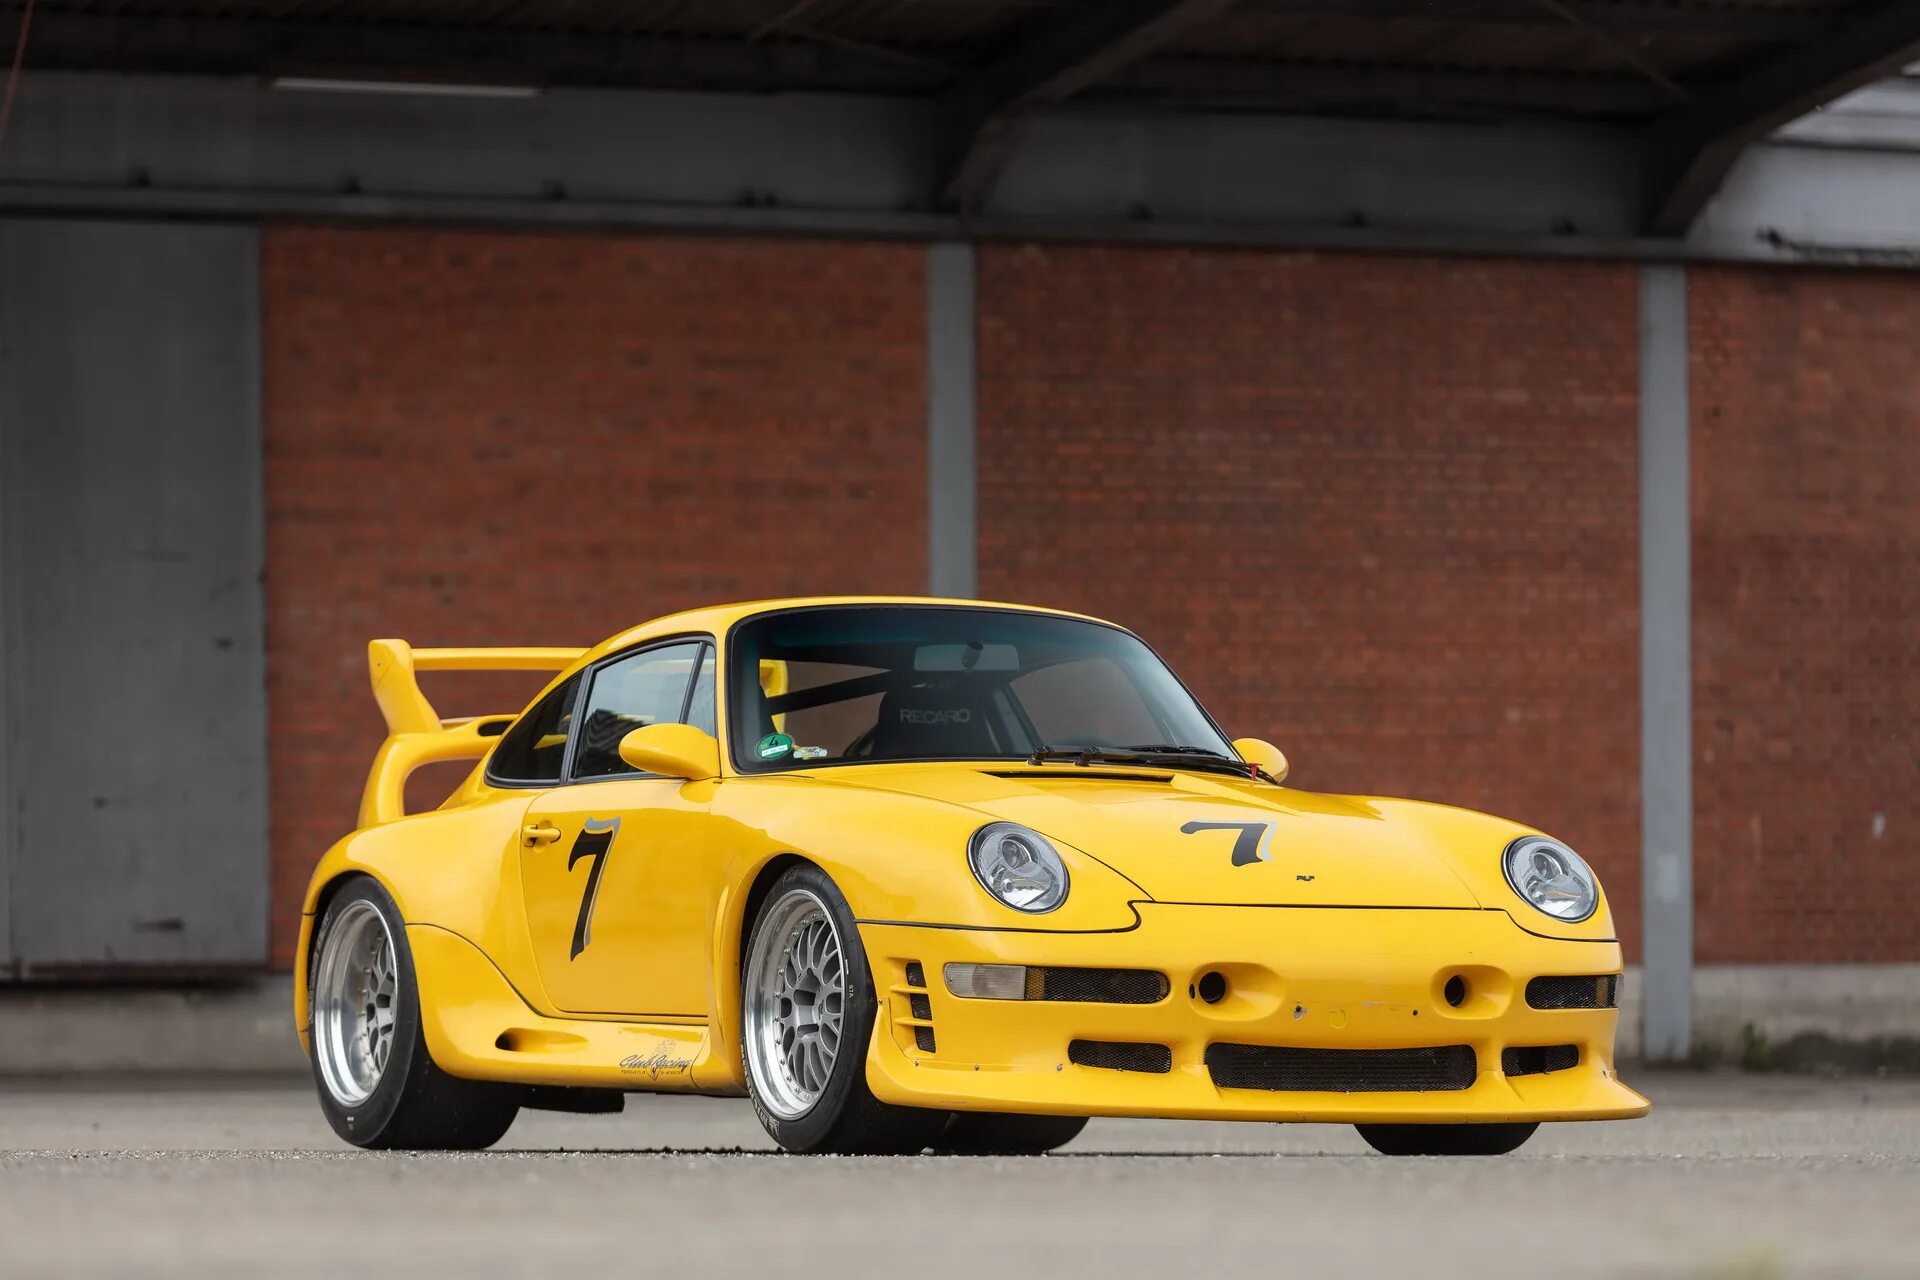 Ruf ctr2 Sport. Ruf 911. Ruf ctr2 Sport (993) '1998. CTR 2 Porsche. Gt 2 sport